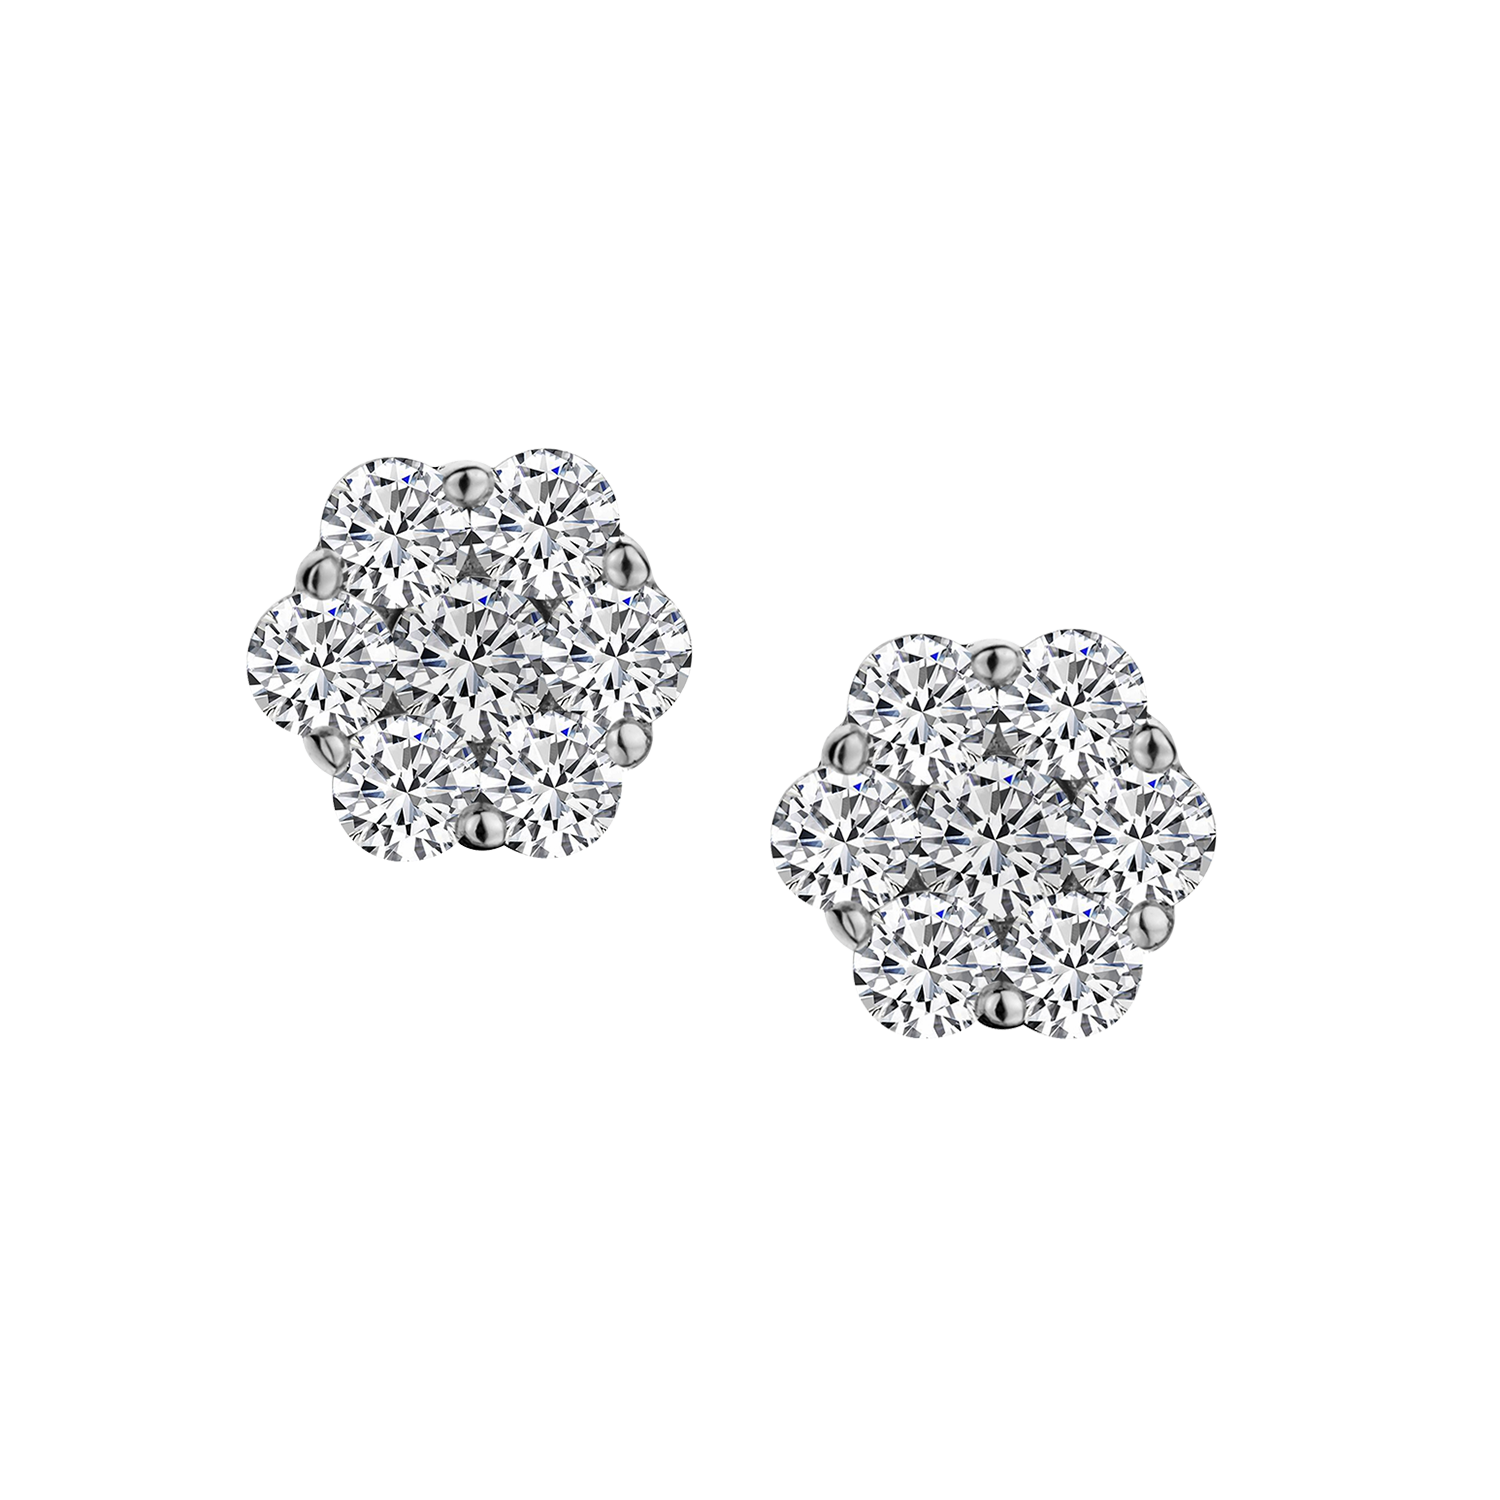 1.00 Carat of Diamonds Flower Earrings, 10kt White Gold....................NOW